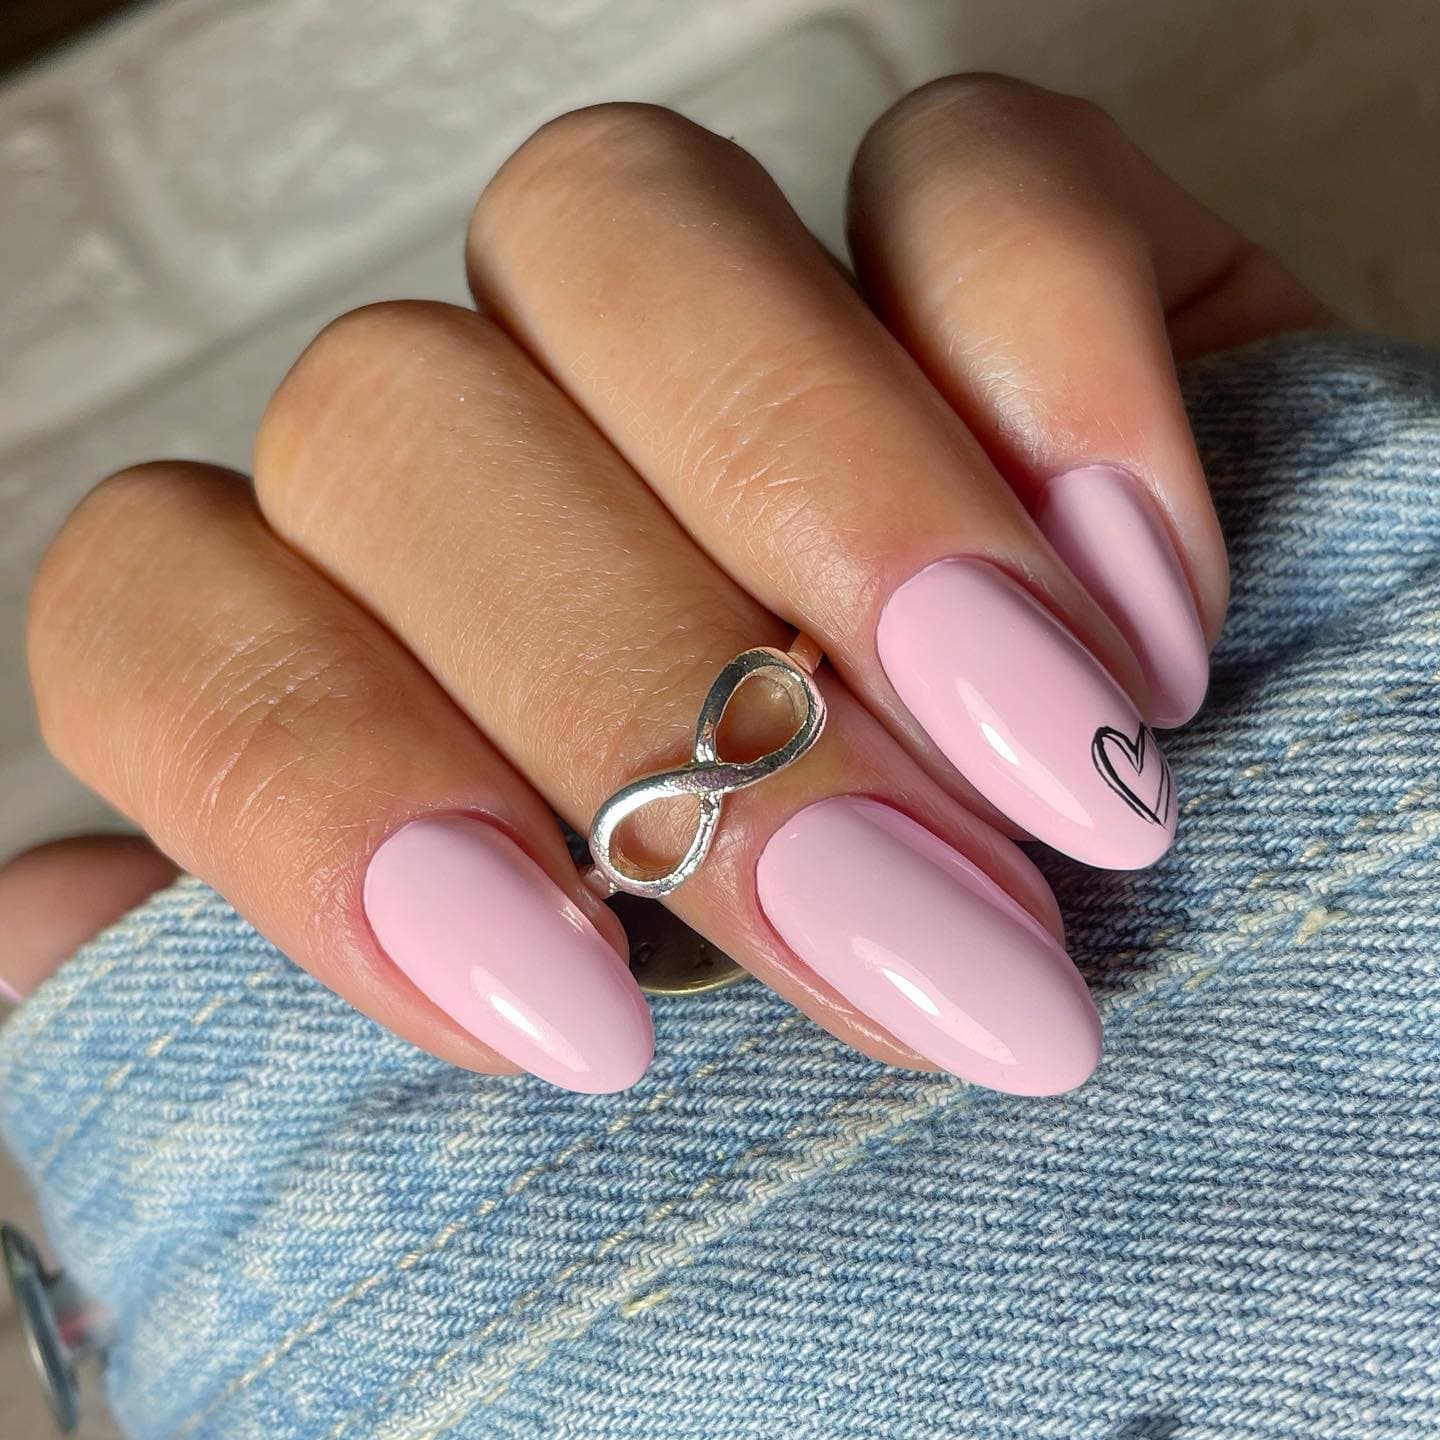 Hot Pink Nails Photo №181